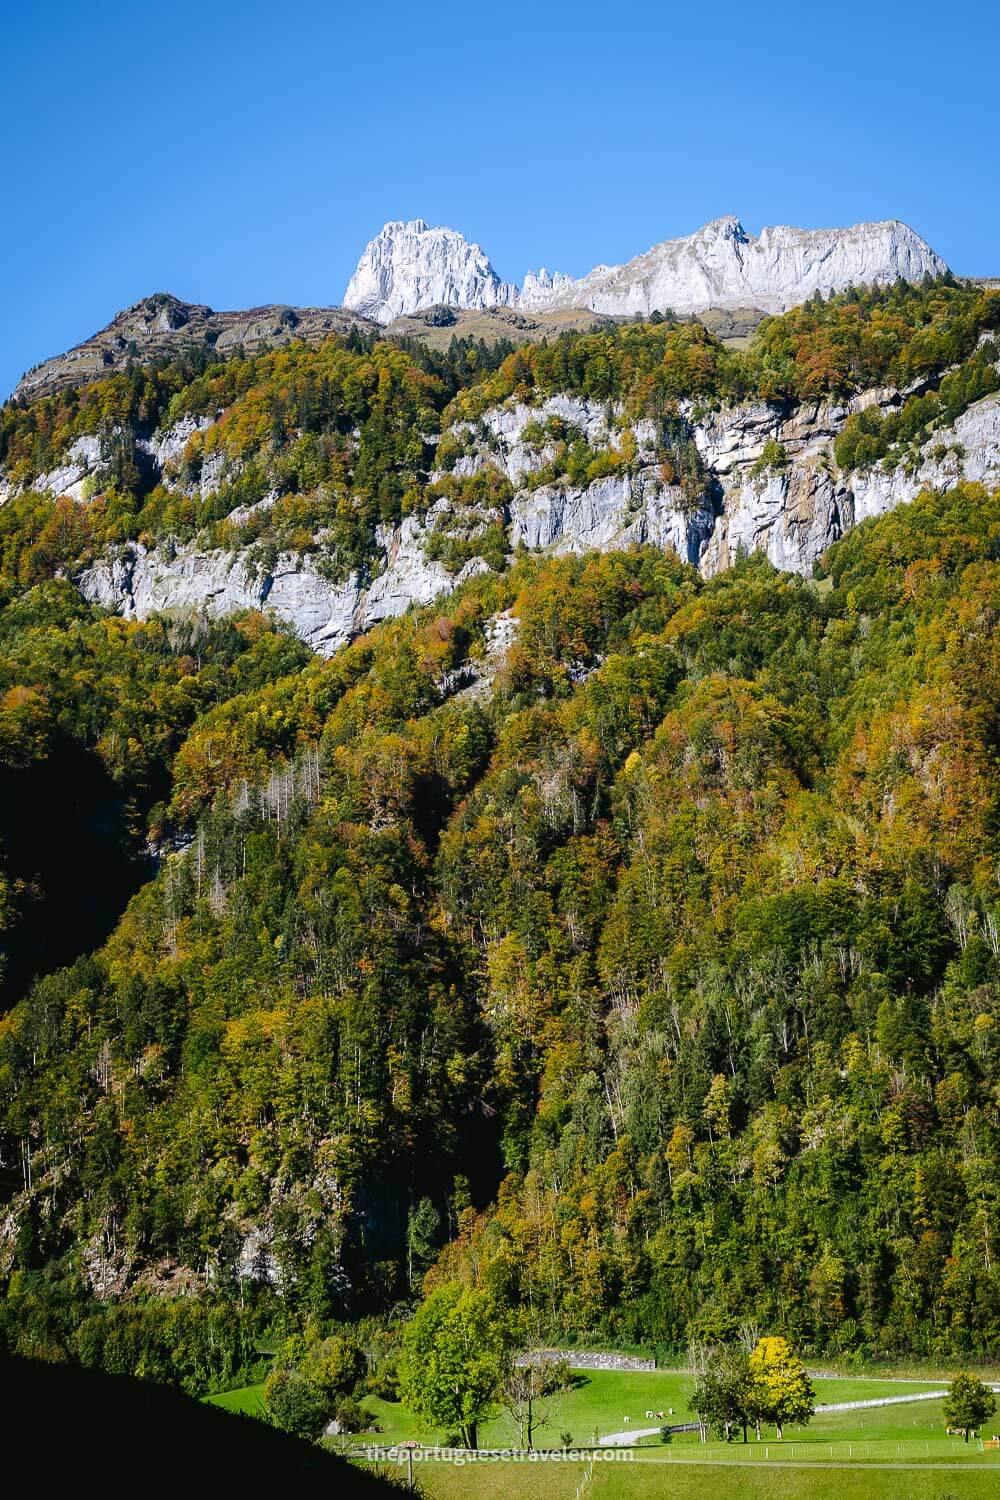 The Autumn colours in Glarus